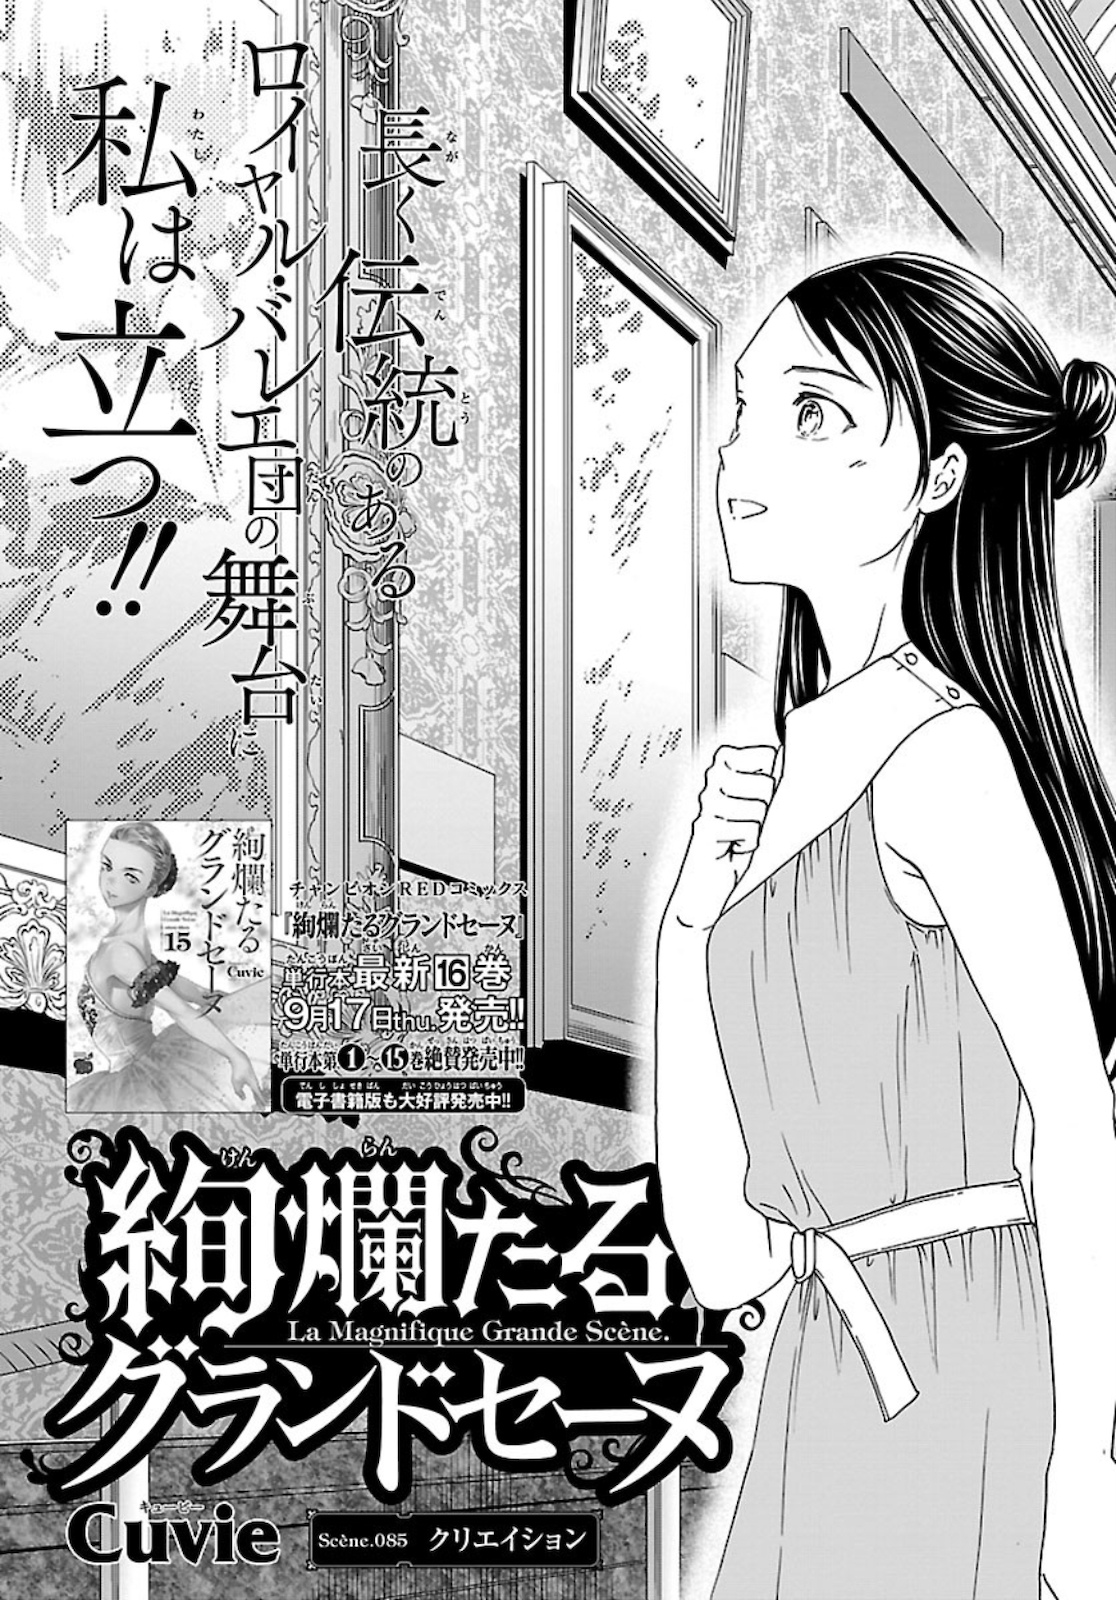 絢爛たるグランドセーヌ 【第85話】 raw - mangakoma